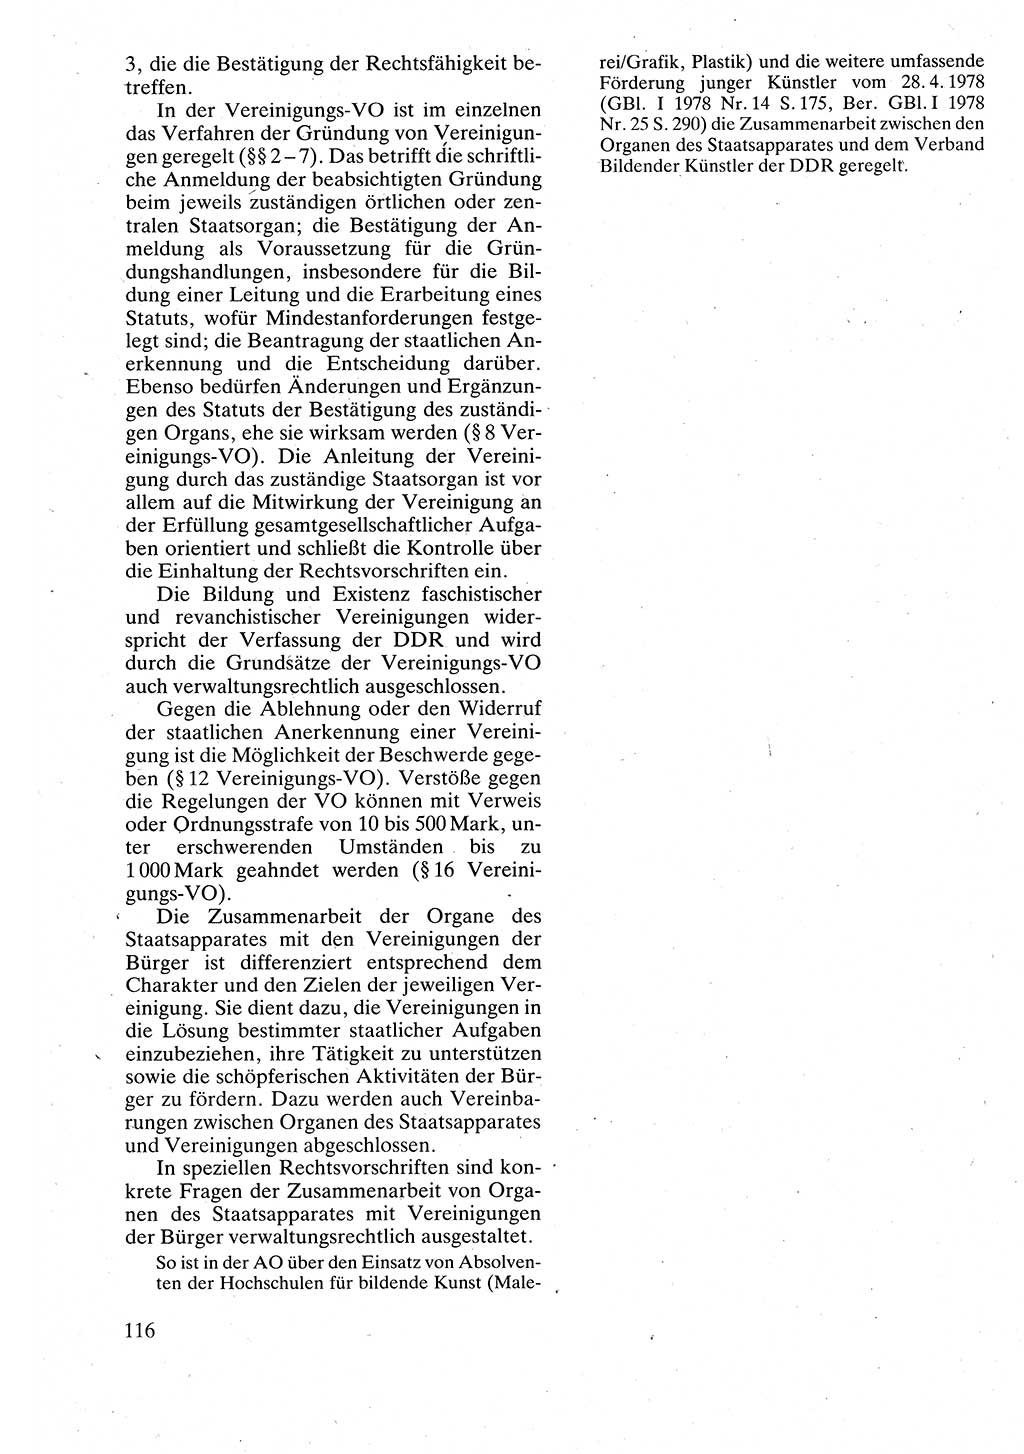 Verwaltungsrecht [Deutsche Demokratische Republik (DDR)], Lehrbuch 1988, Seite 116 (Verw.-R. DDR Lb. 1988, S. 116)